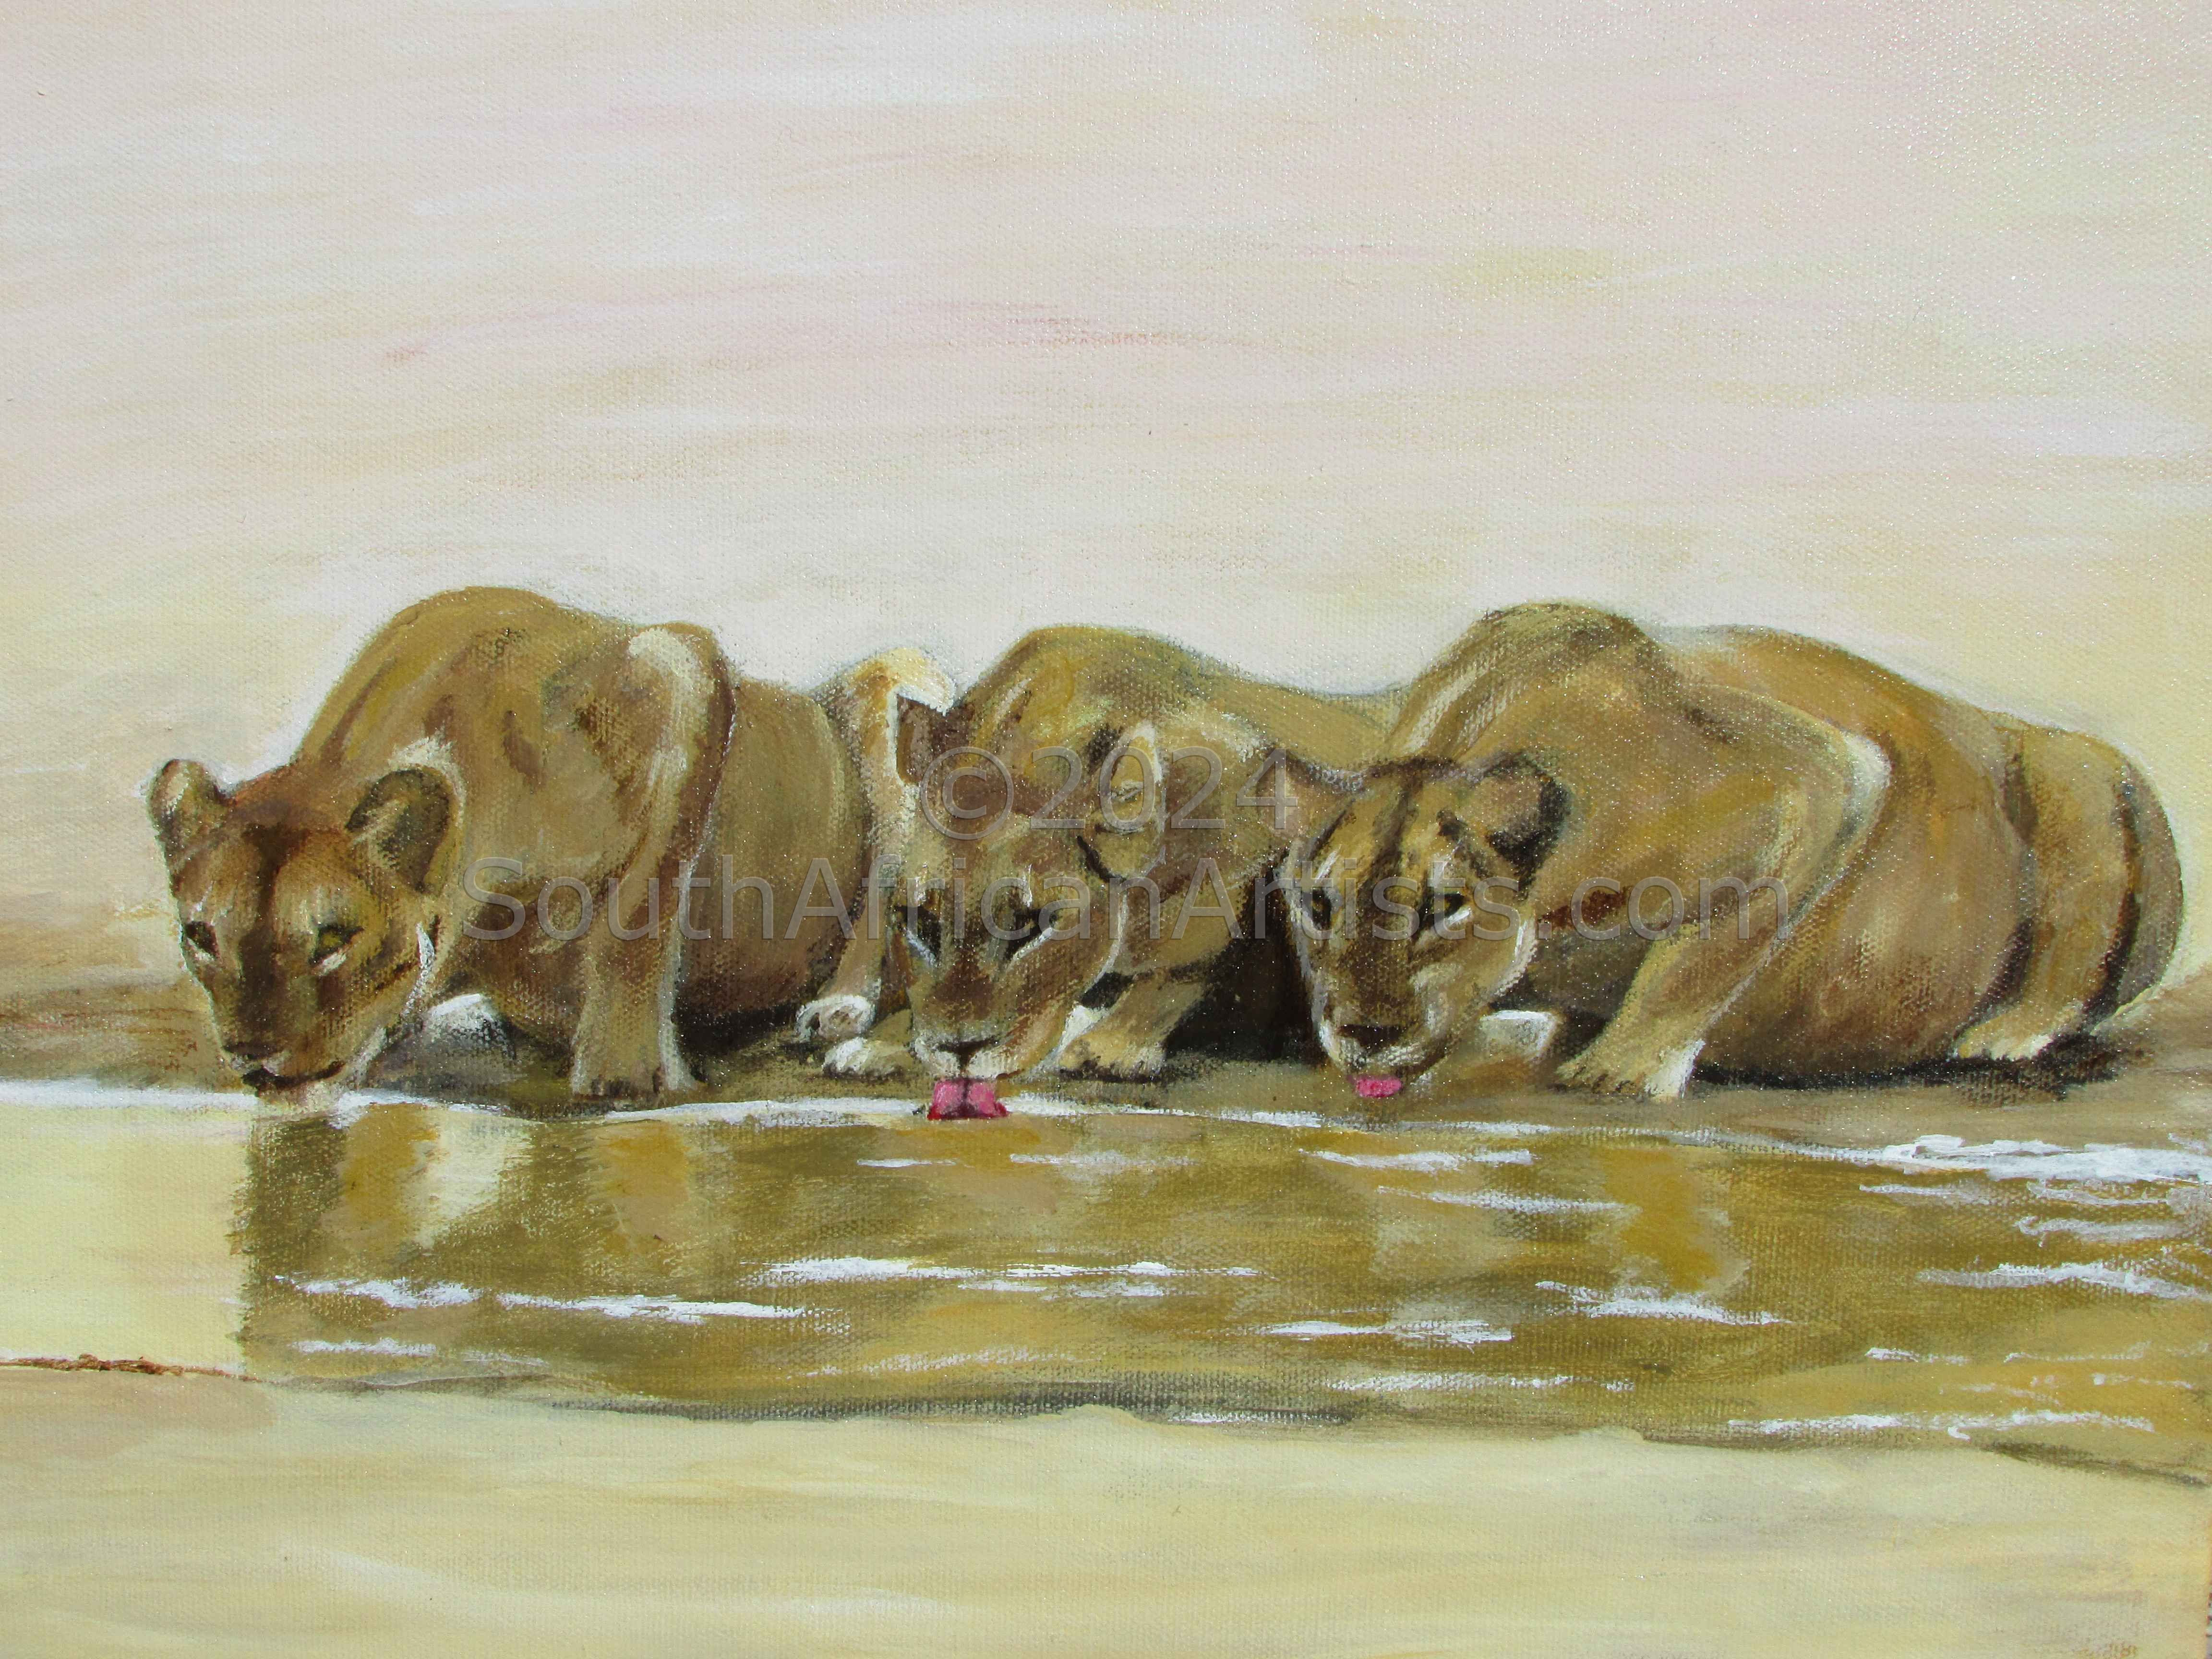 3 Lioness' at Ngwenya Lodge